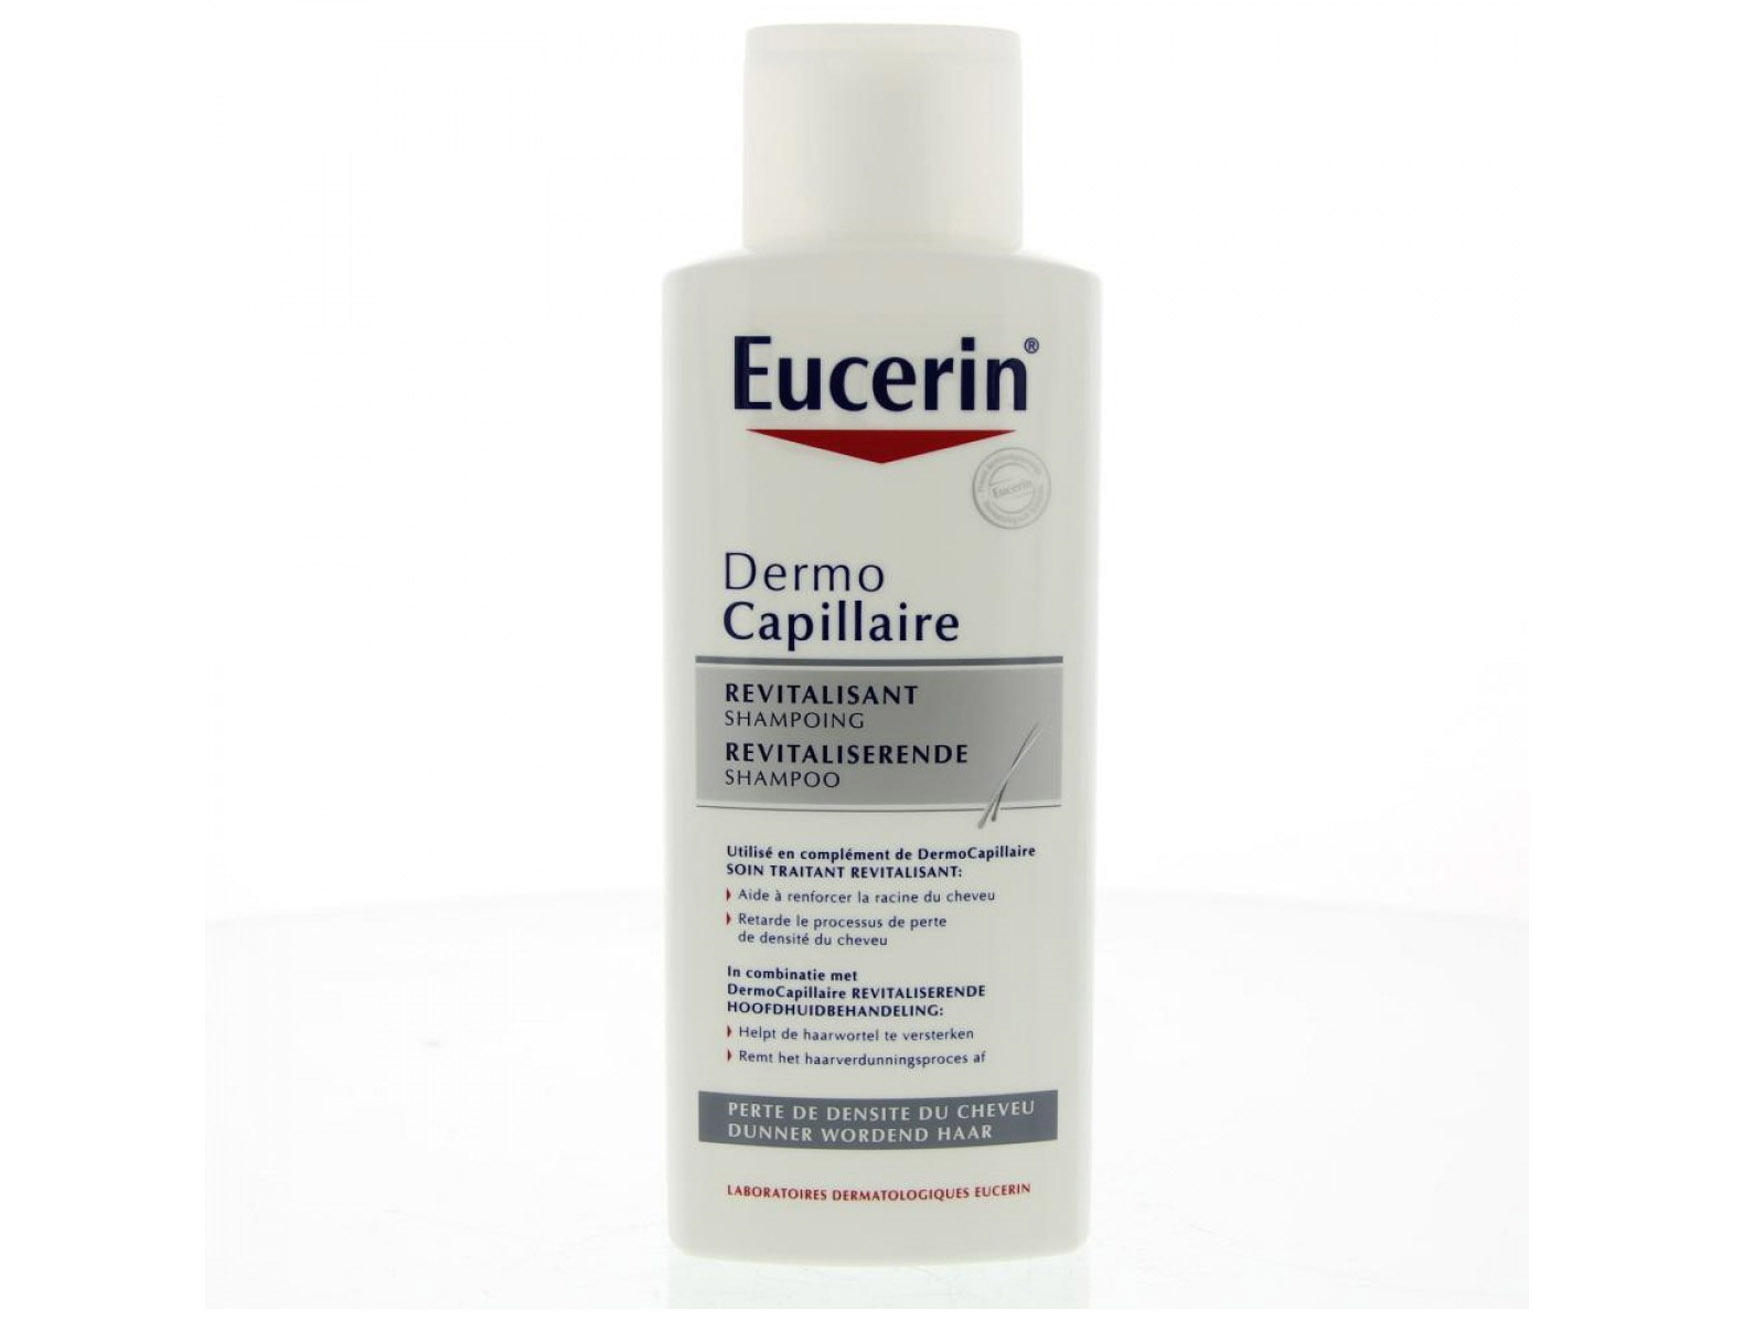 Eucerin shampooing révitalisant - 200 ml - 1 pc